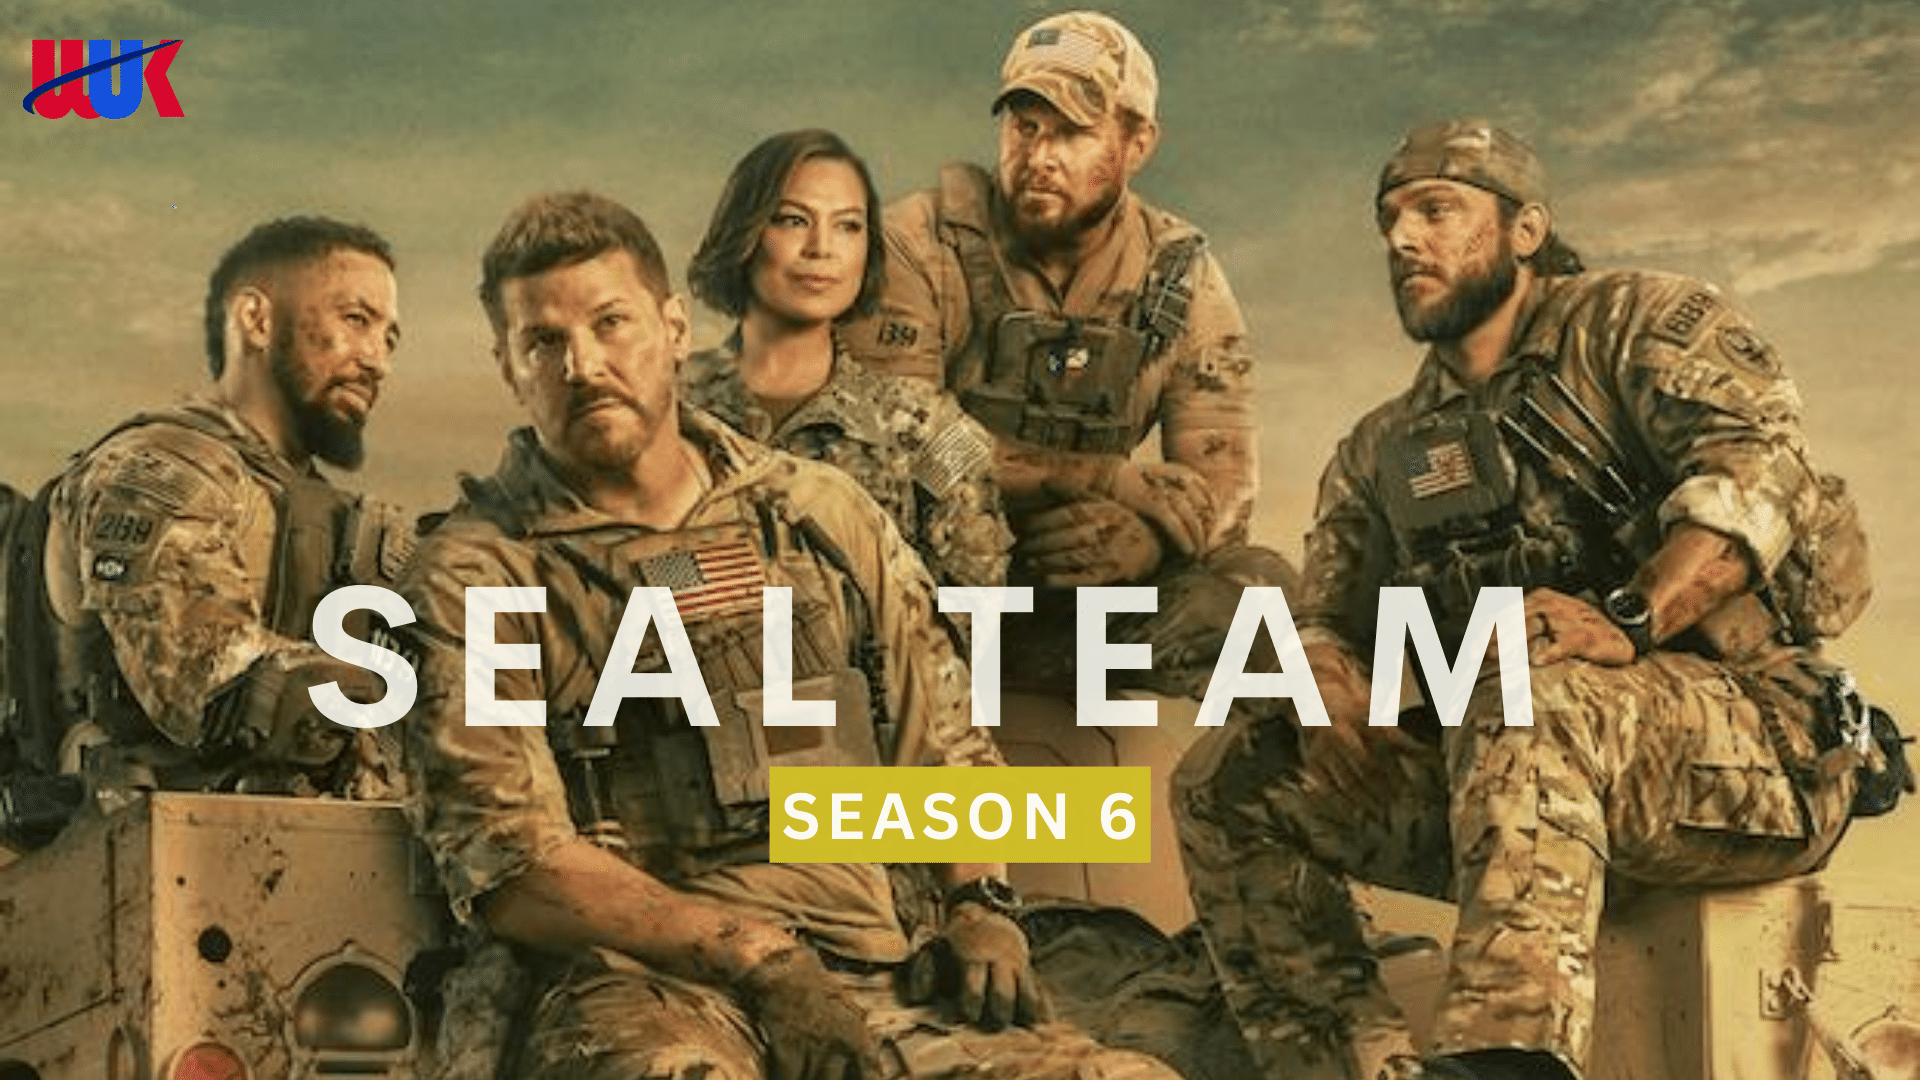 Watch Seal Team Season 6 in UK